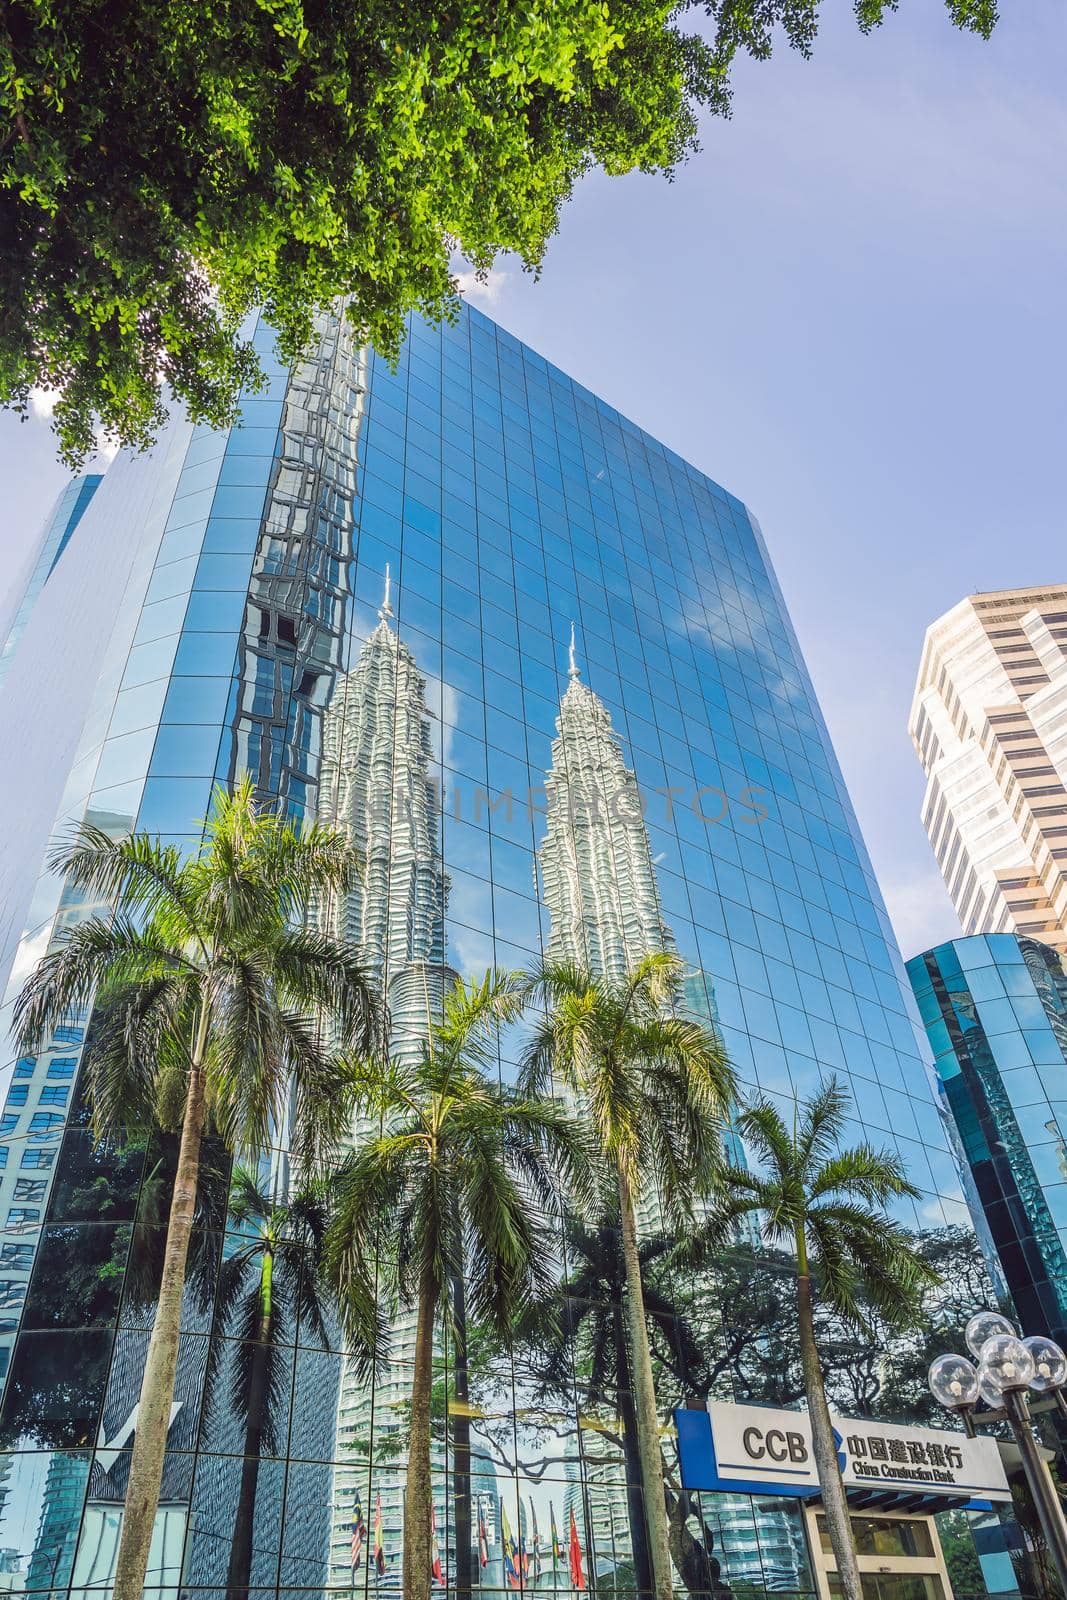 Kuala Lumpur, Malaysia - 03.26.2019: Petronas Twin Towers, the symbol skyscraper of Kuala Lumpur. reflected in the building.